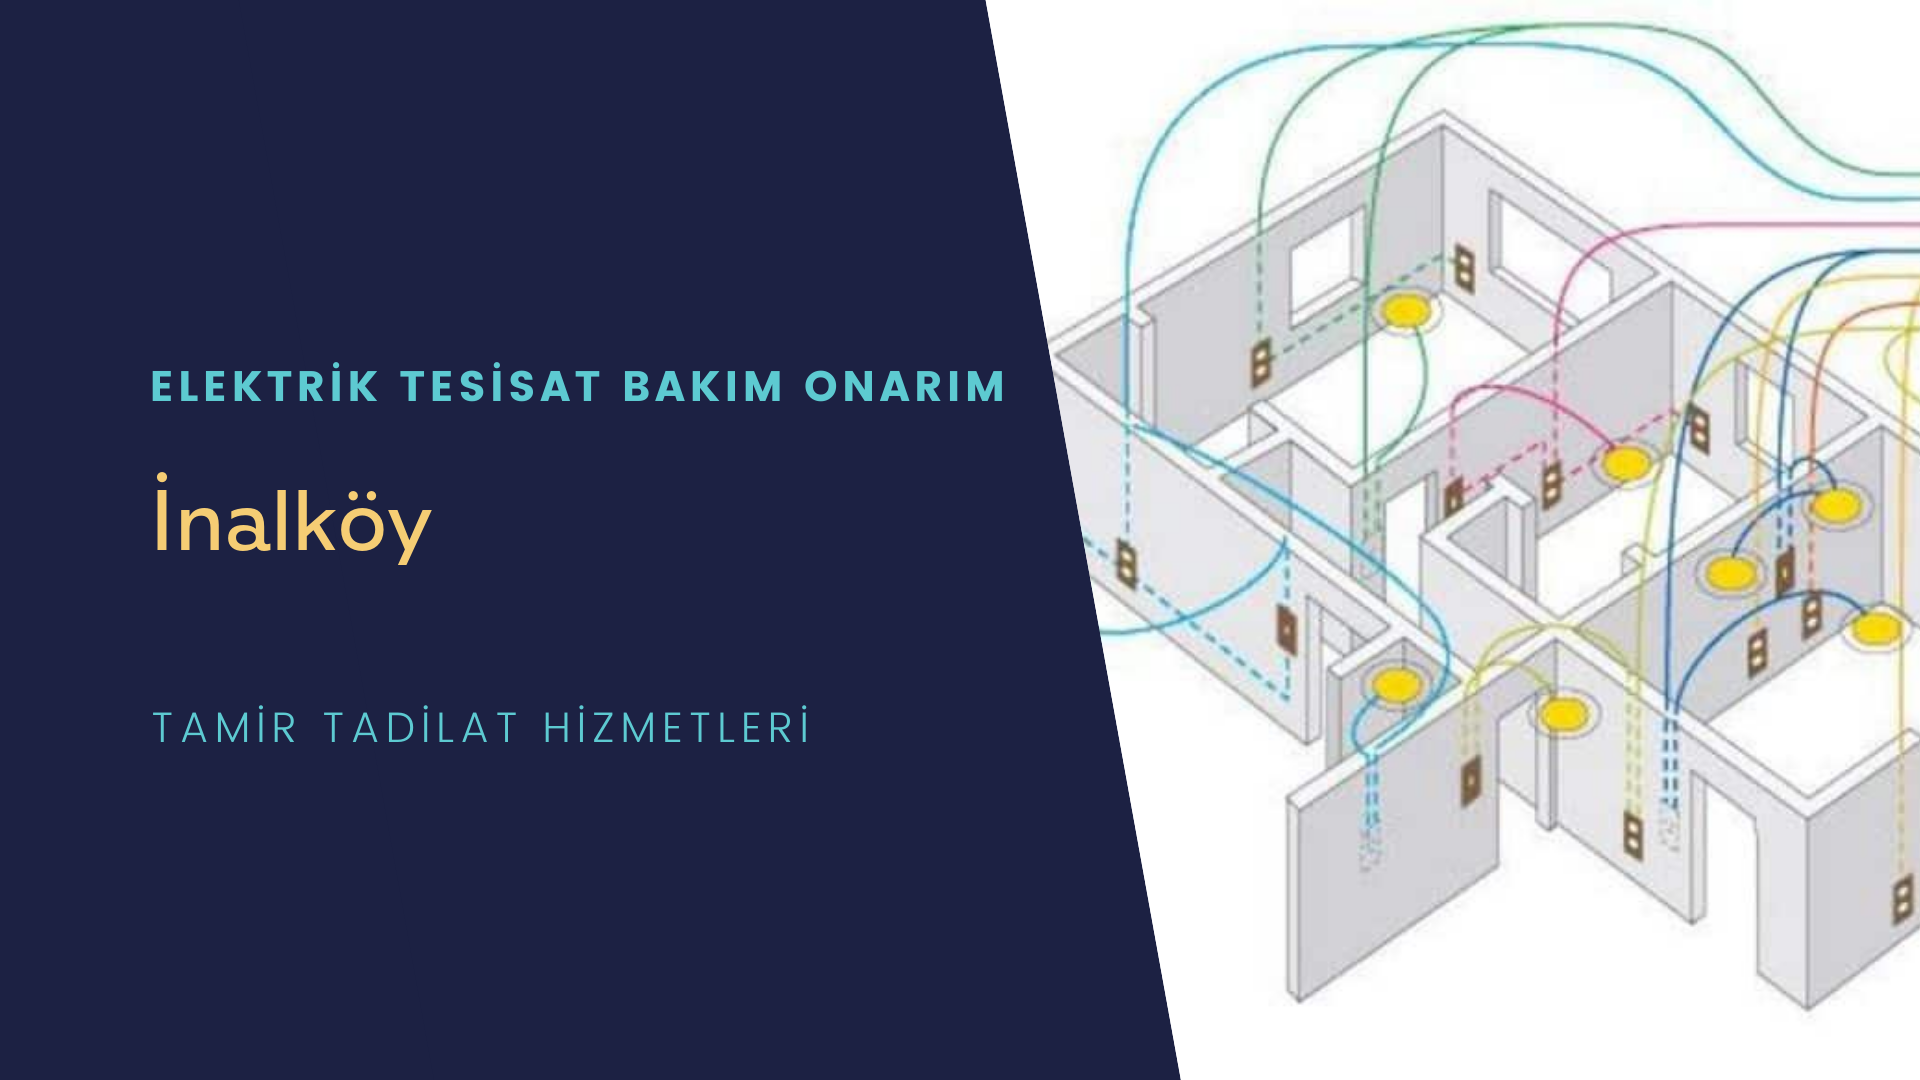 İnalköy'de elektrik tesisatı ustalarımı arıyorsunuz doğru adrestenizi İnalköy elektrik tesisatı ustalarımız 7/24 sizlere hizmet vermekten mutluluk duyar.